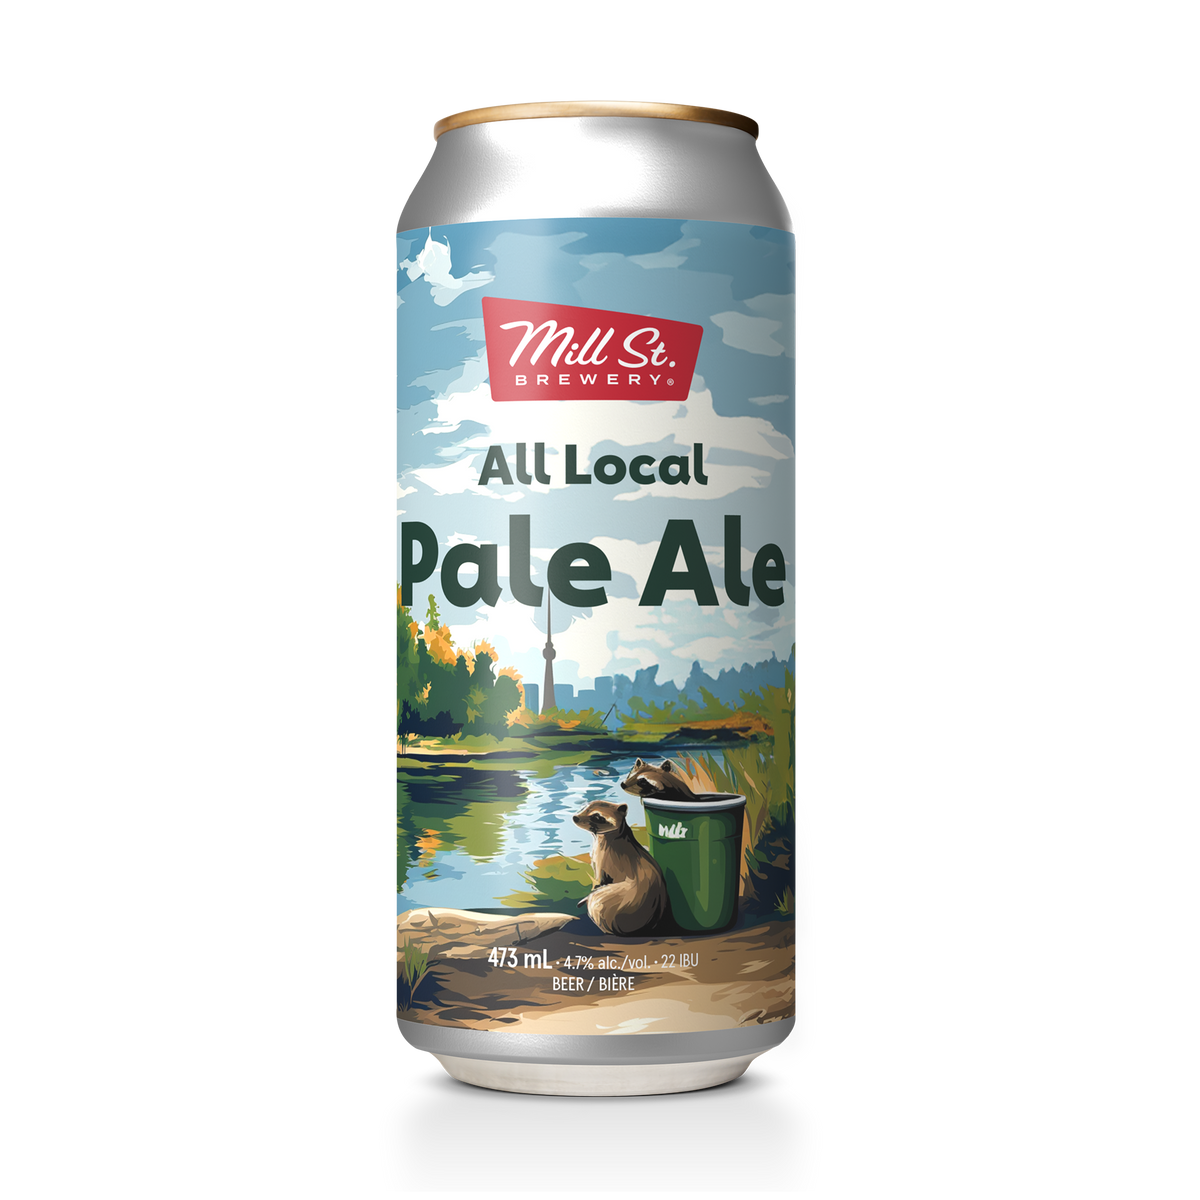 All Local Pale Ale